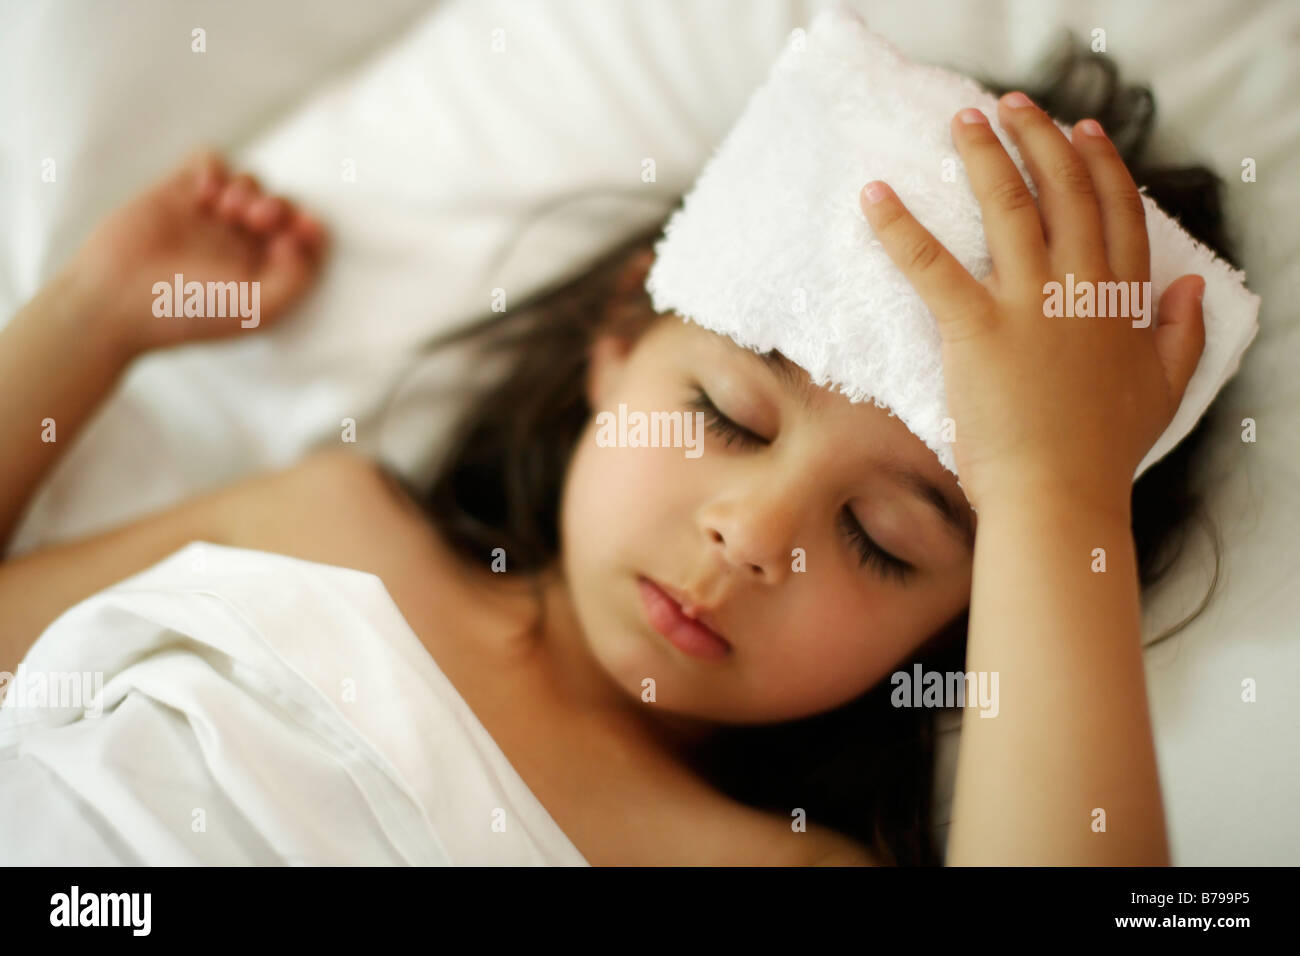 Bambina di cinque anni con flanella fresca sulla testa nel letto con lenzuola bianche Foto Stock